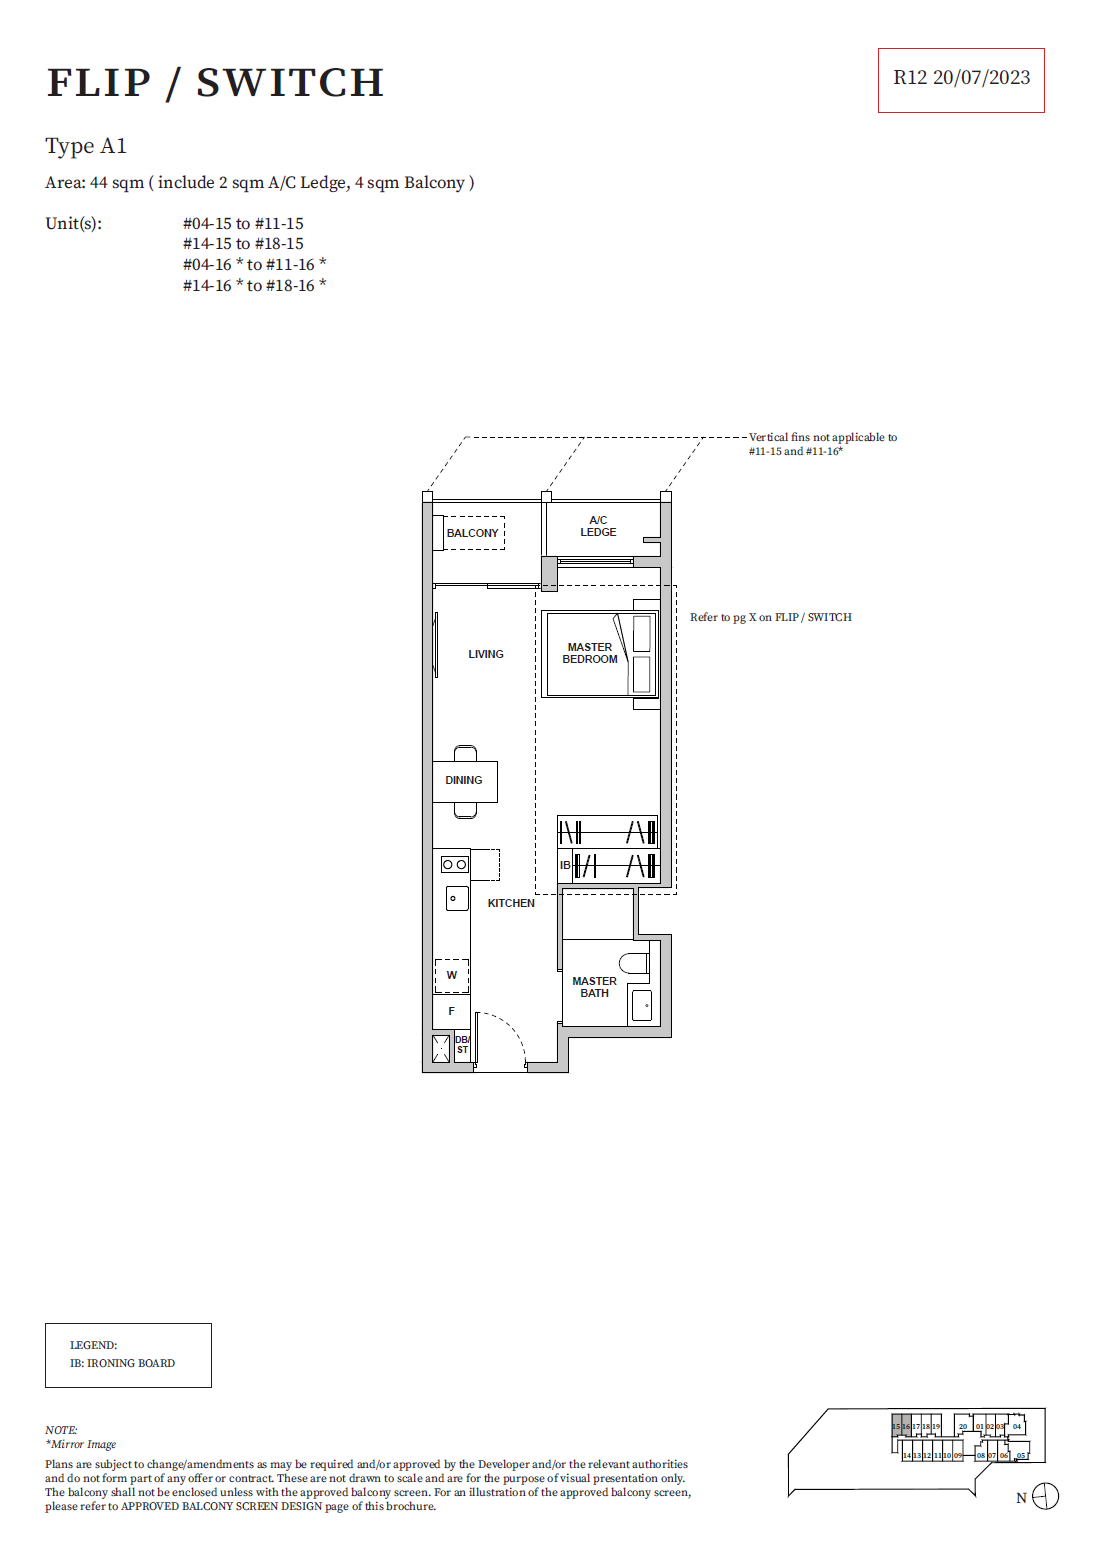 TMW Maxwell Floor Plan - 1 Bedroom Flip'Switch - A1